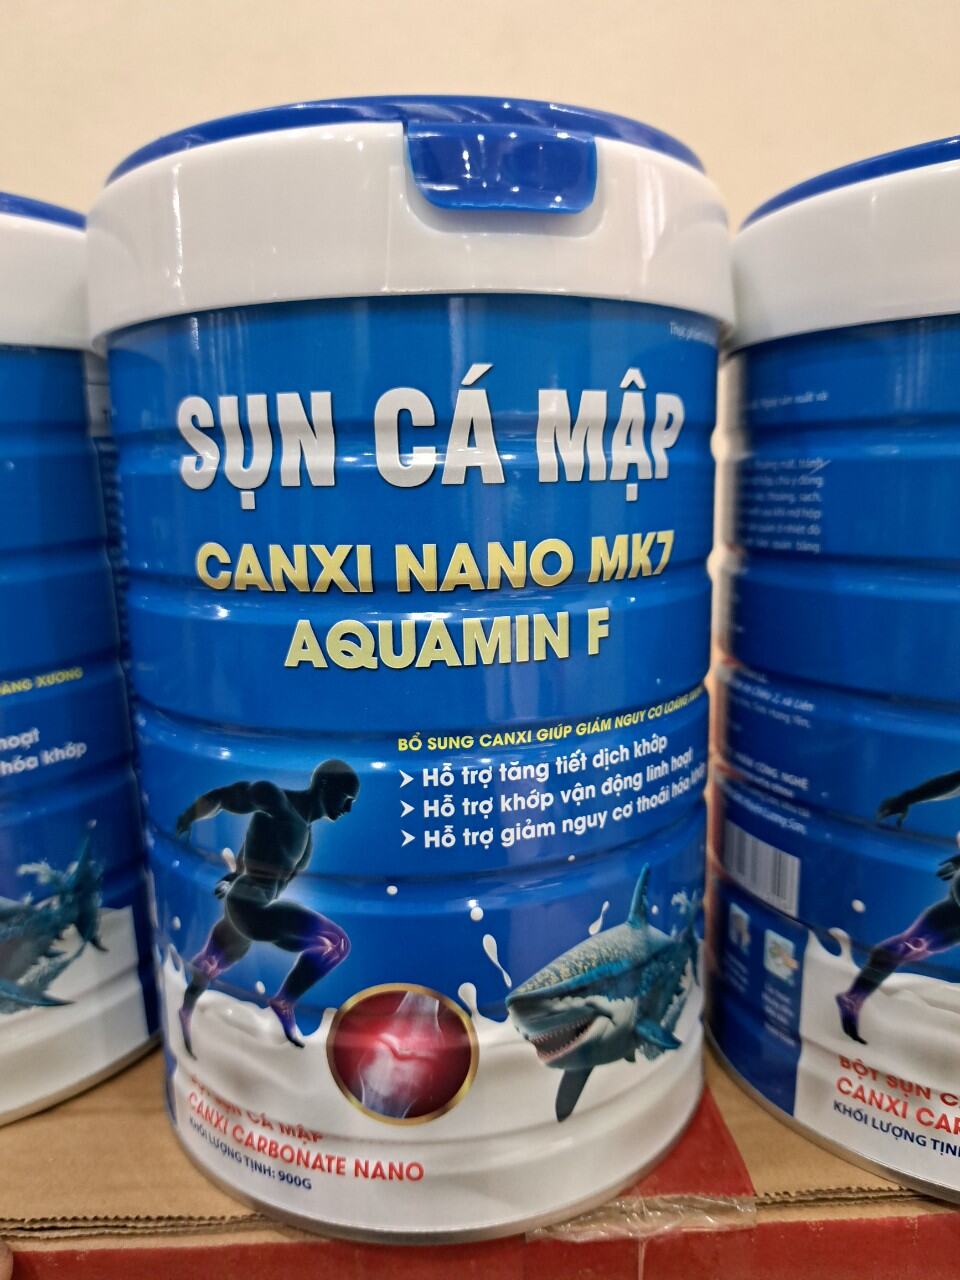 Sữa Sụn Cá Mập Canxi NaNo MK7 AQUAMIN F 900g date mới (Nắp cao)